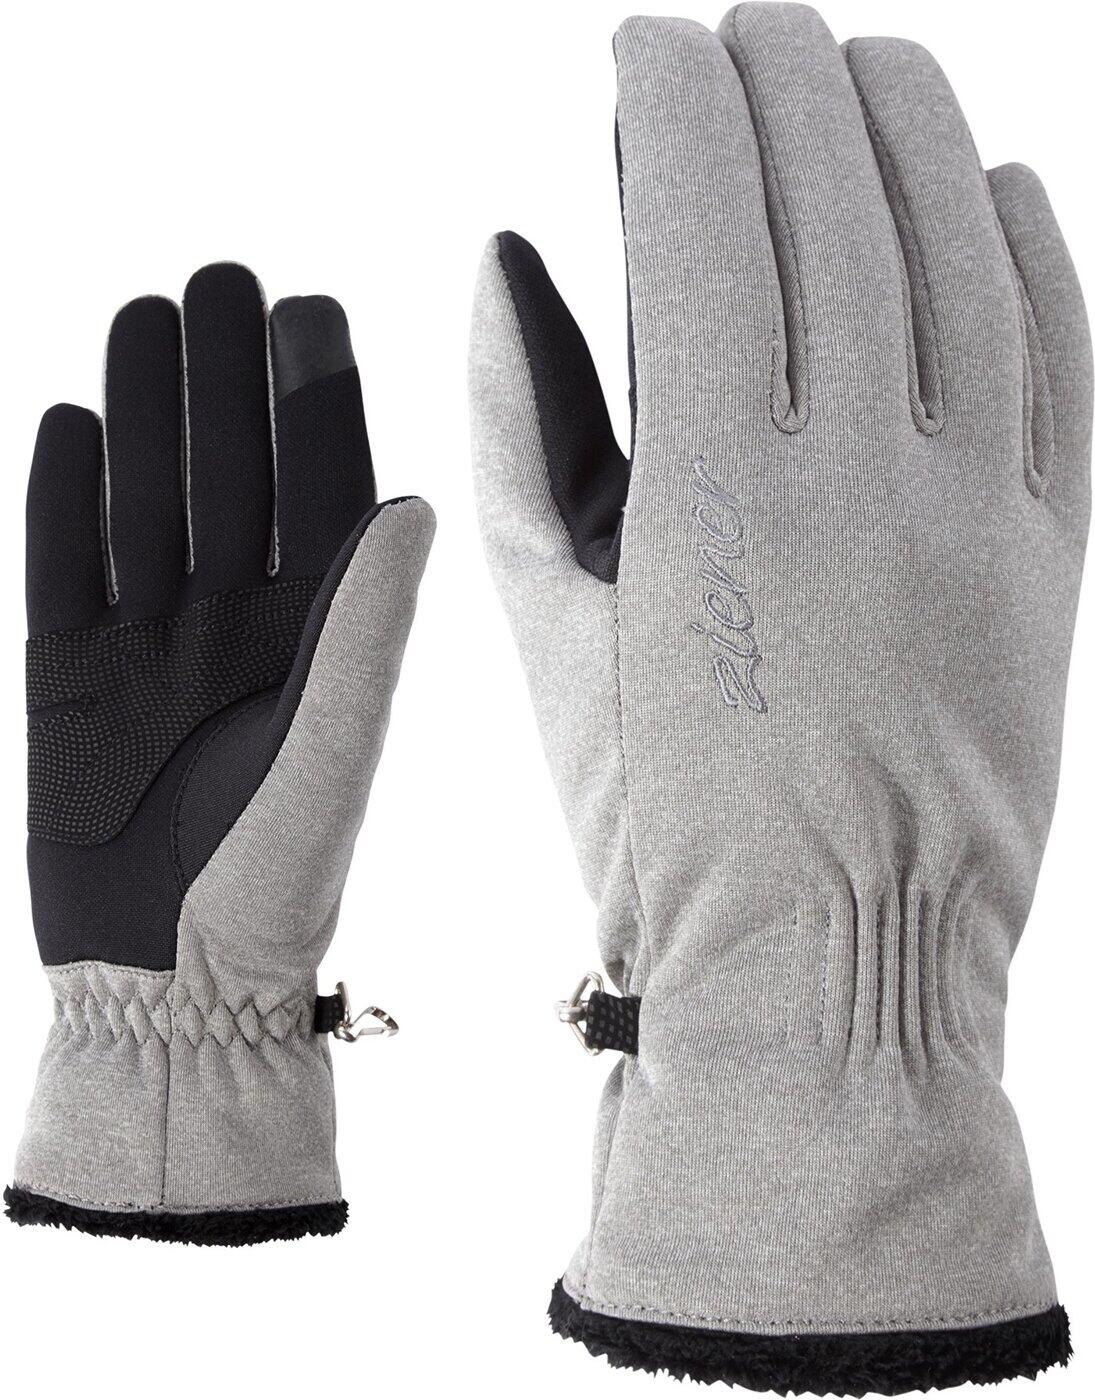 melange LADY Ziener Ziener 752 grey multisport IBRANA glove 6 TOUCH